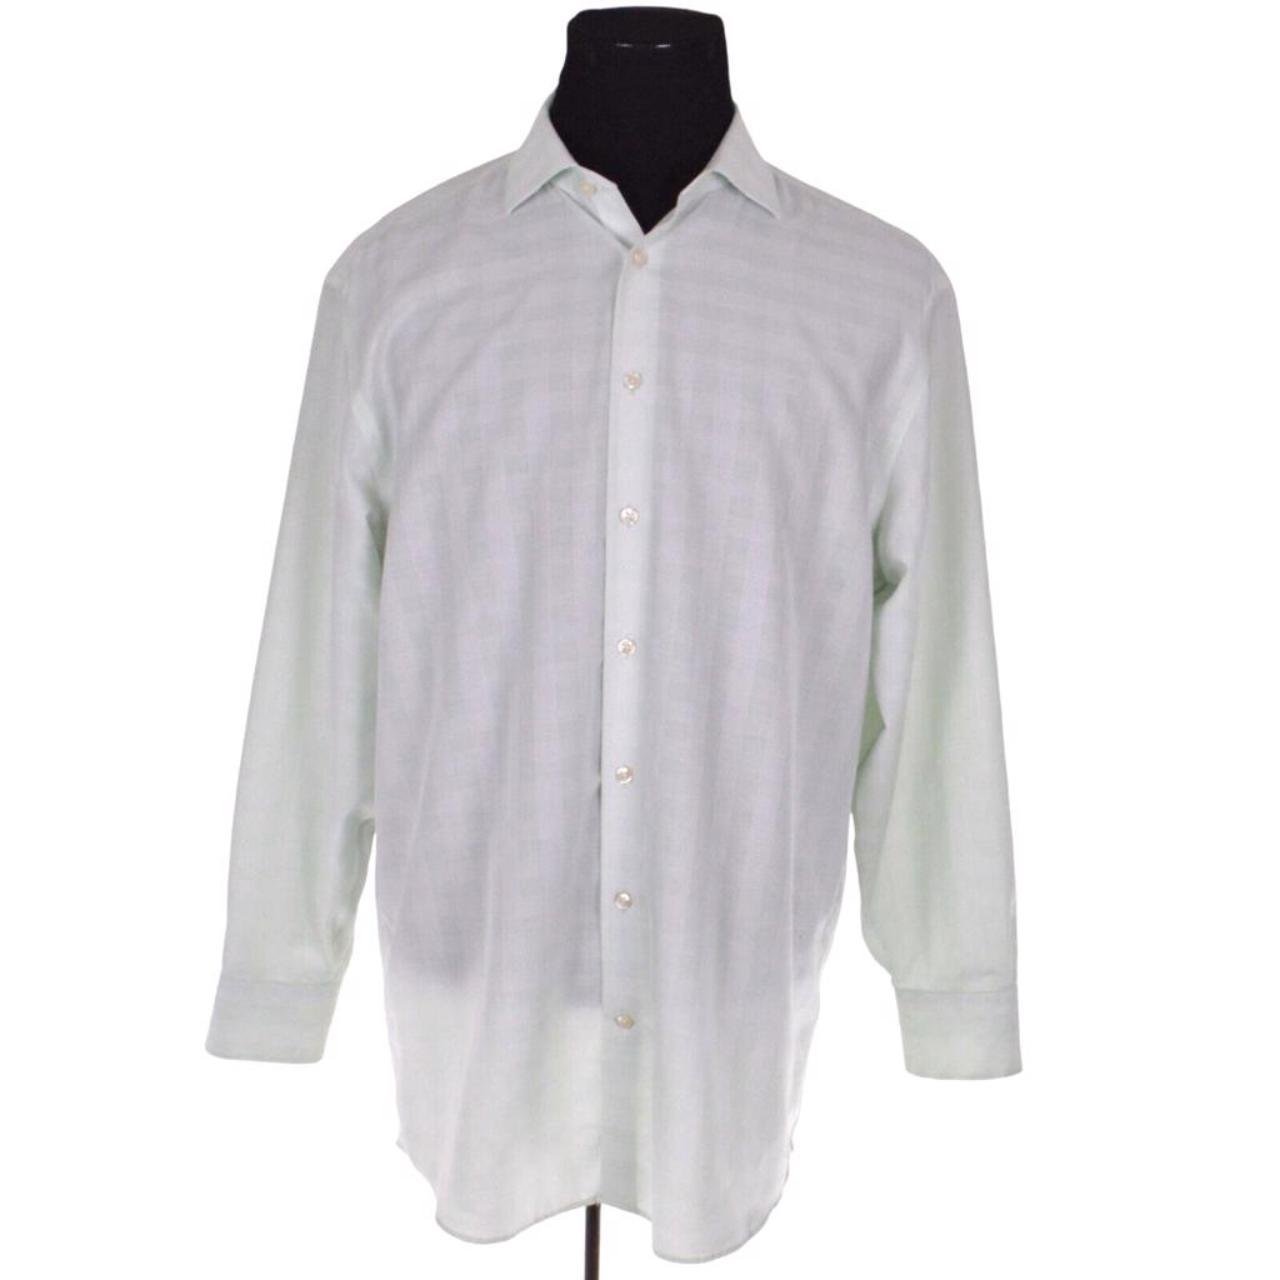 Charles Tyrwhitt Men's Green and White Shirt